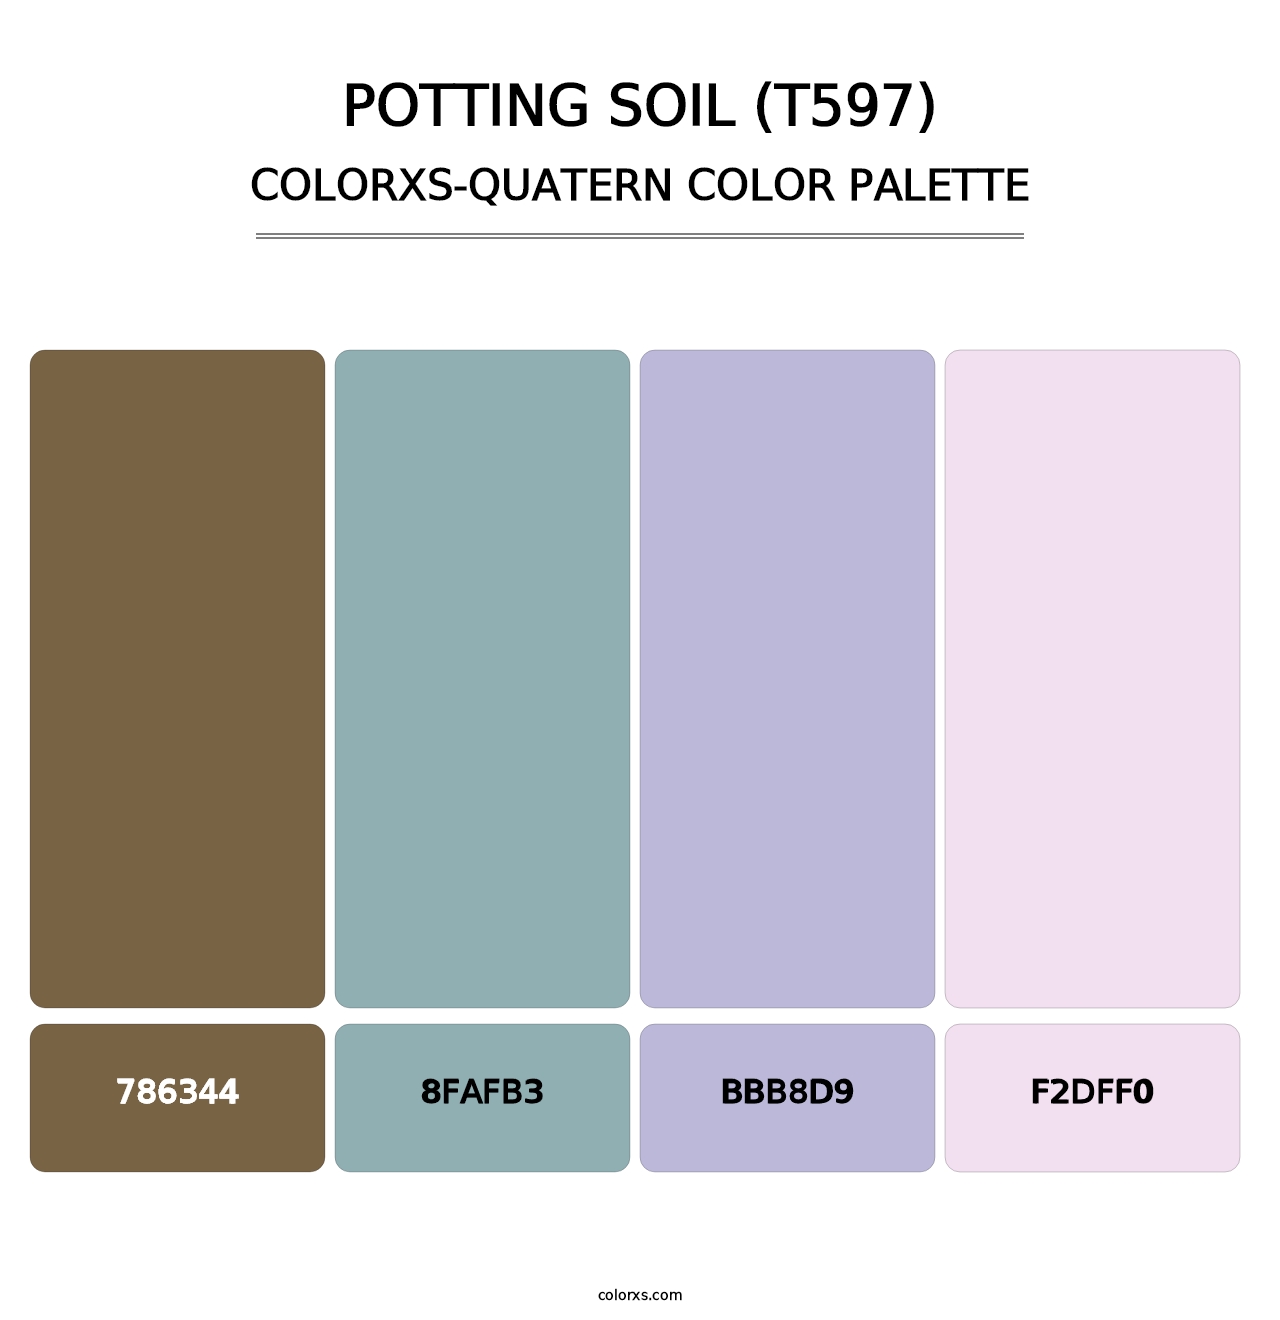 Potting Soil (T597) - Colorxs Quatern Palette